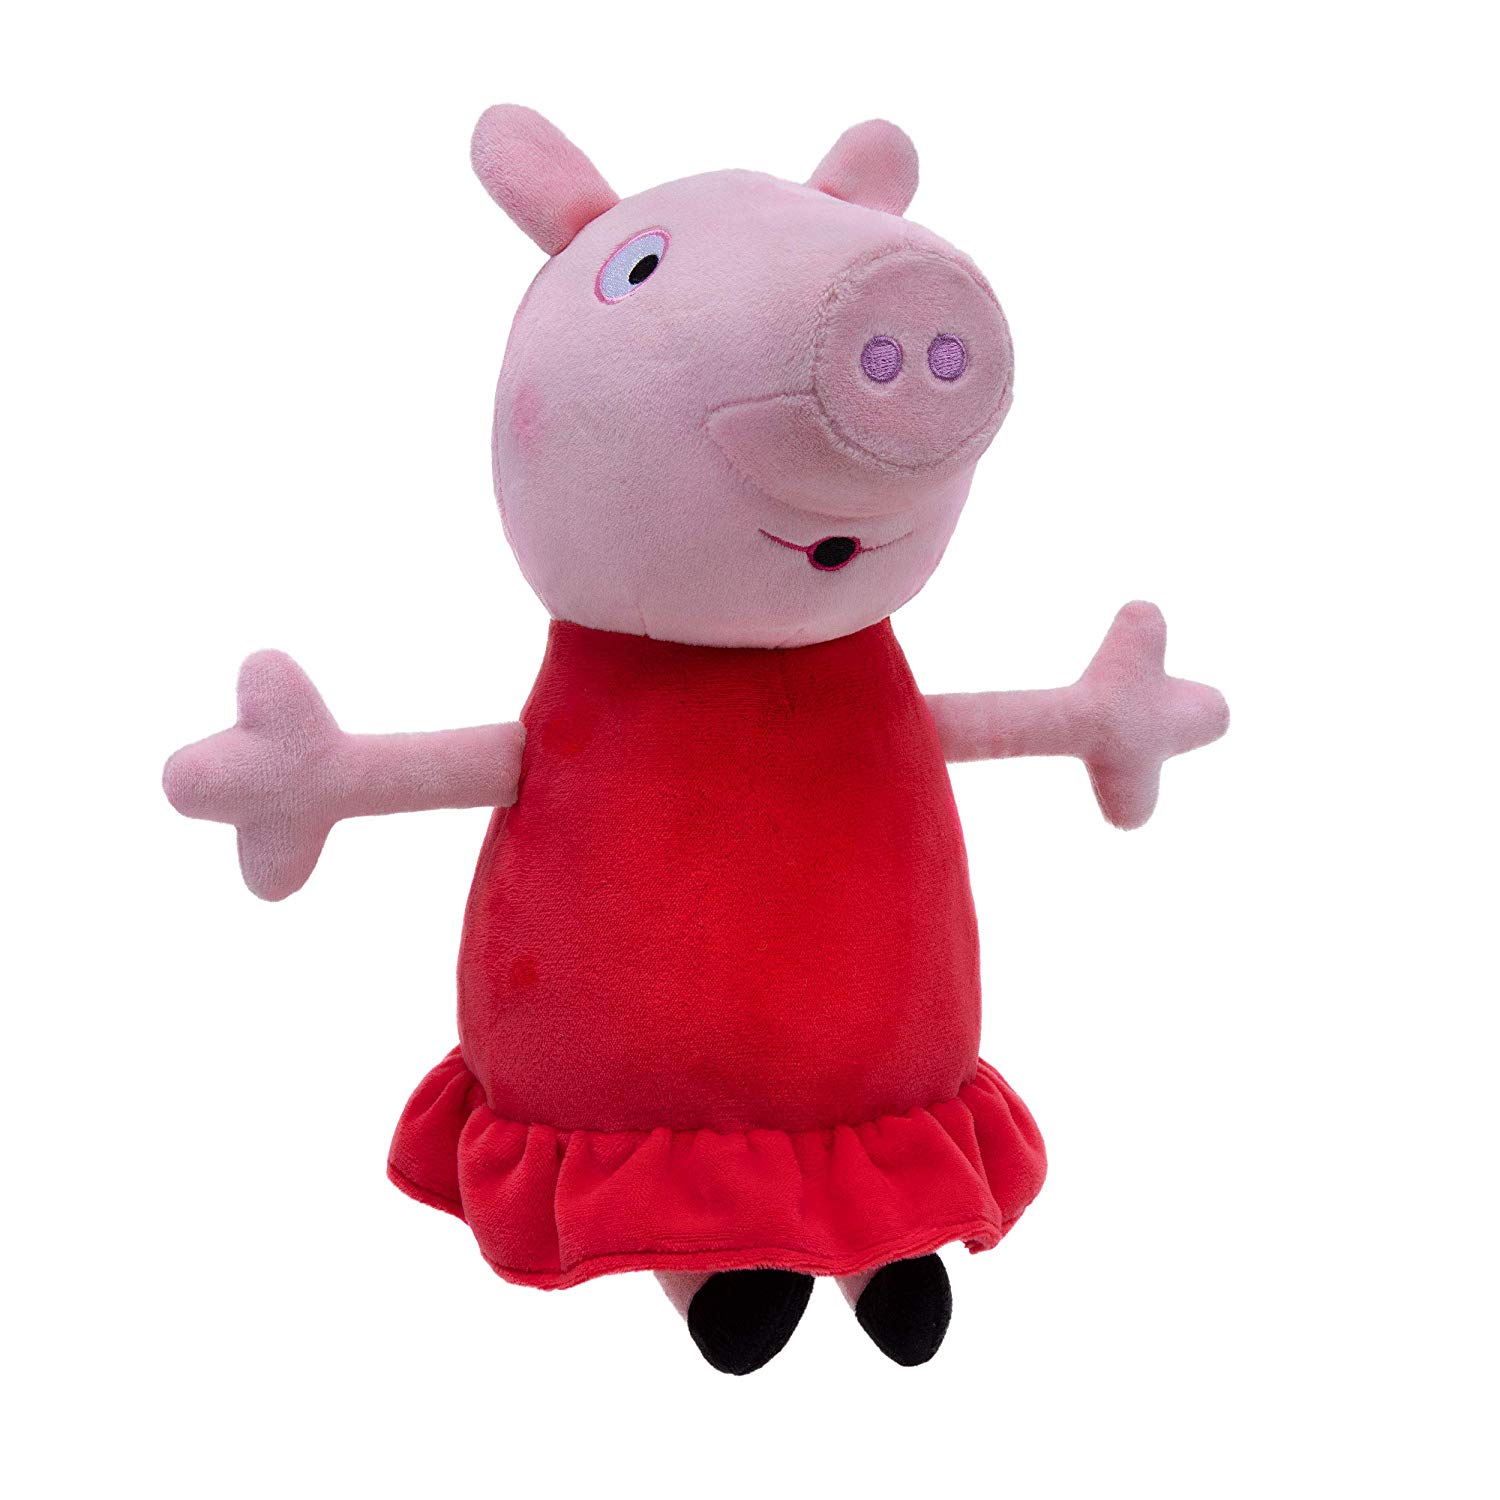 Peppa Pig Hug N' Oink 12" Plush - image 1 of 9